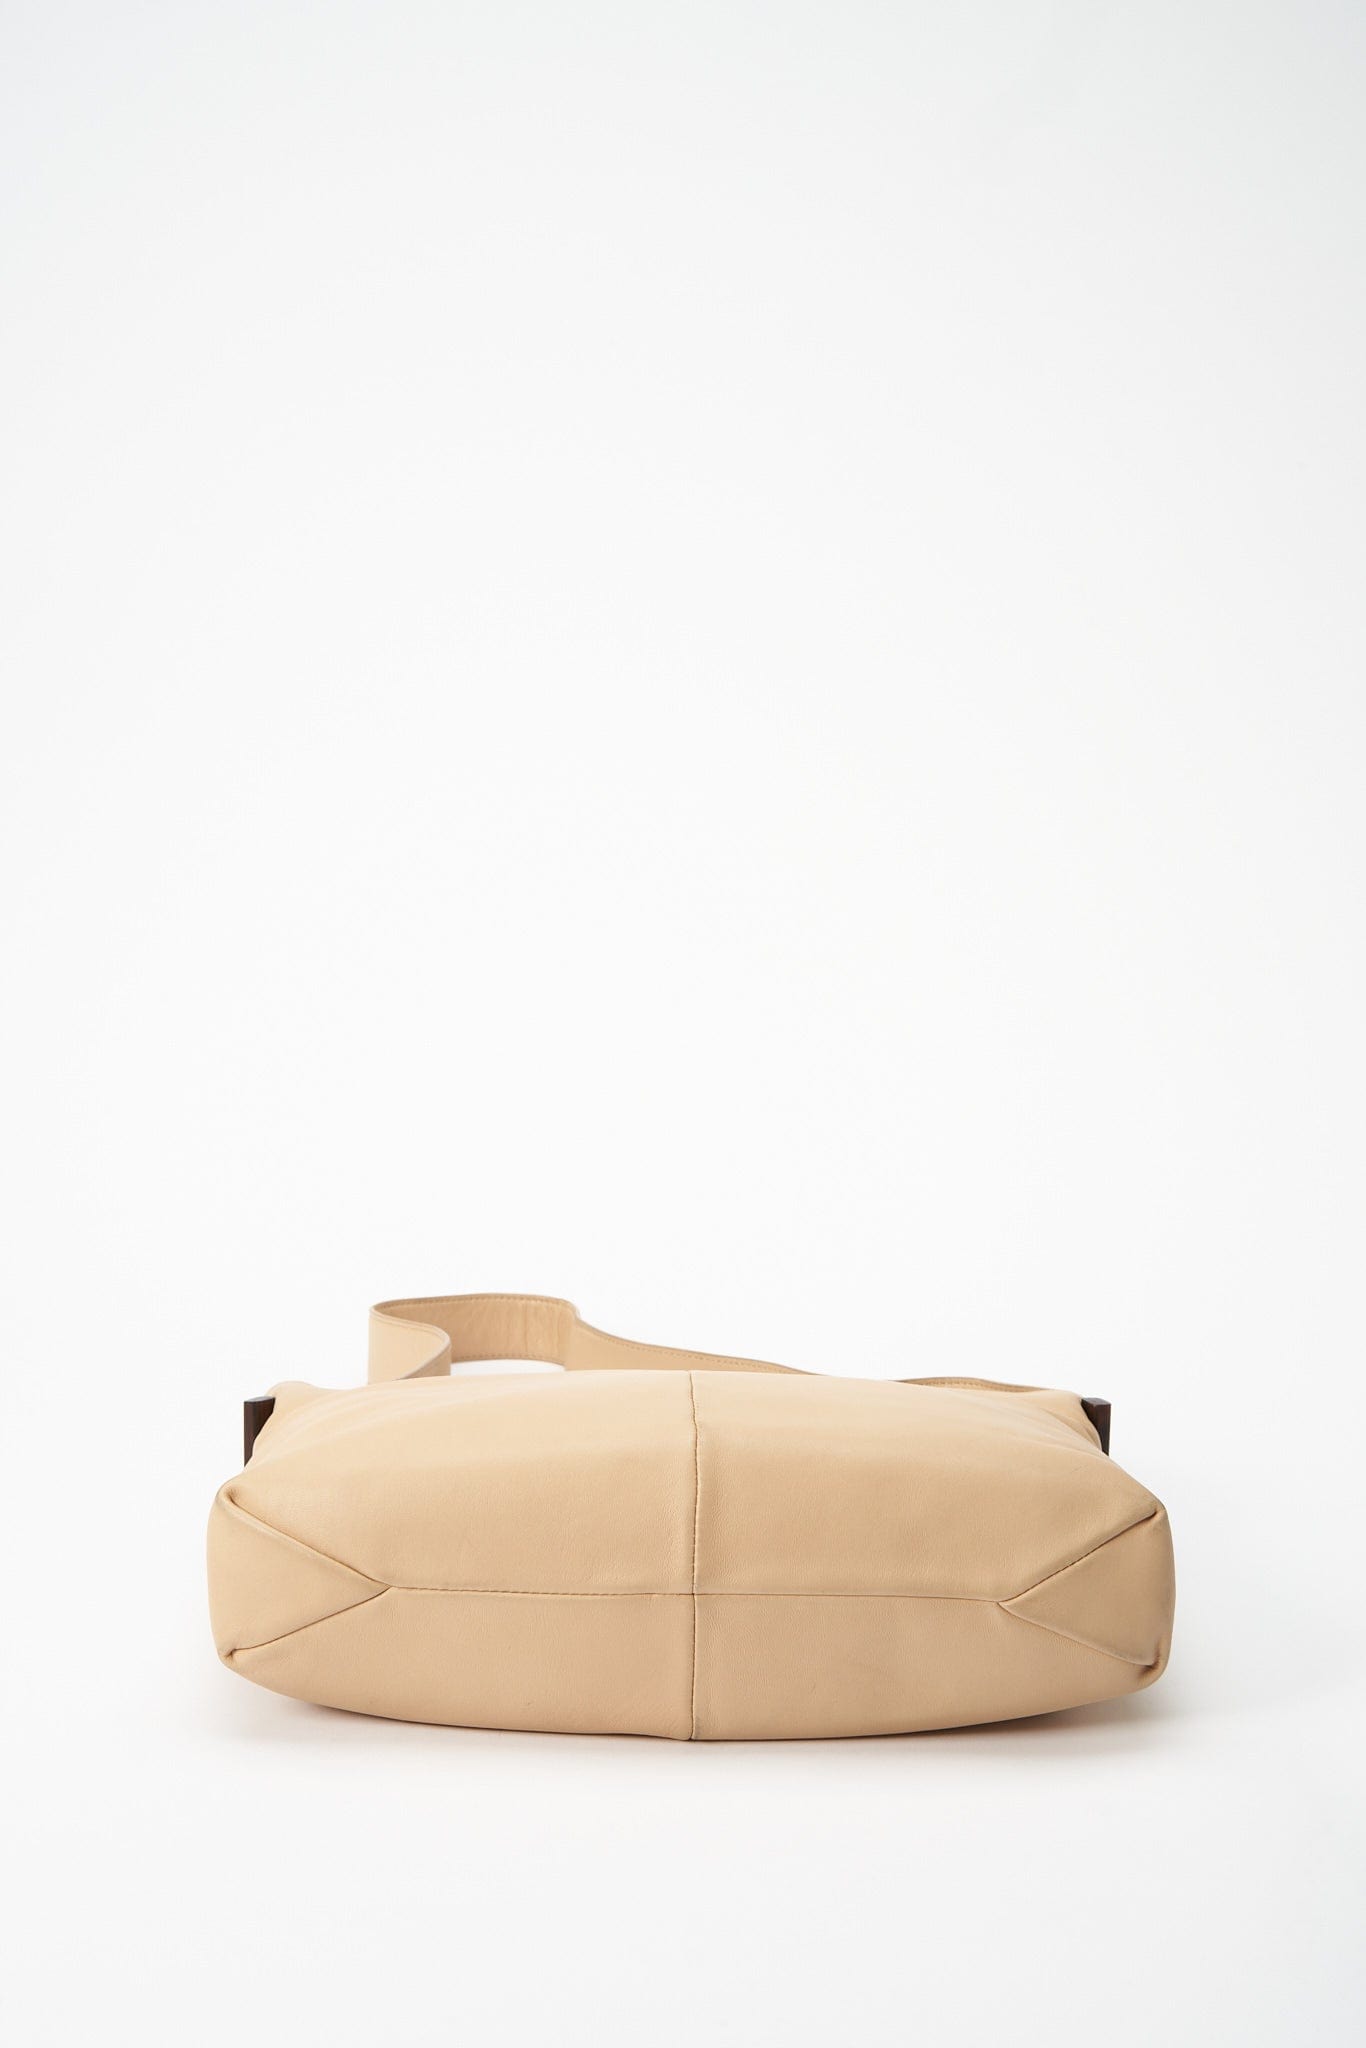 Vintage Loewe Shoulder Bag - Burgundy – The Hosta